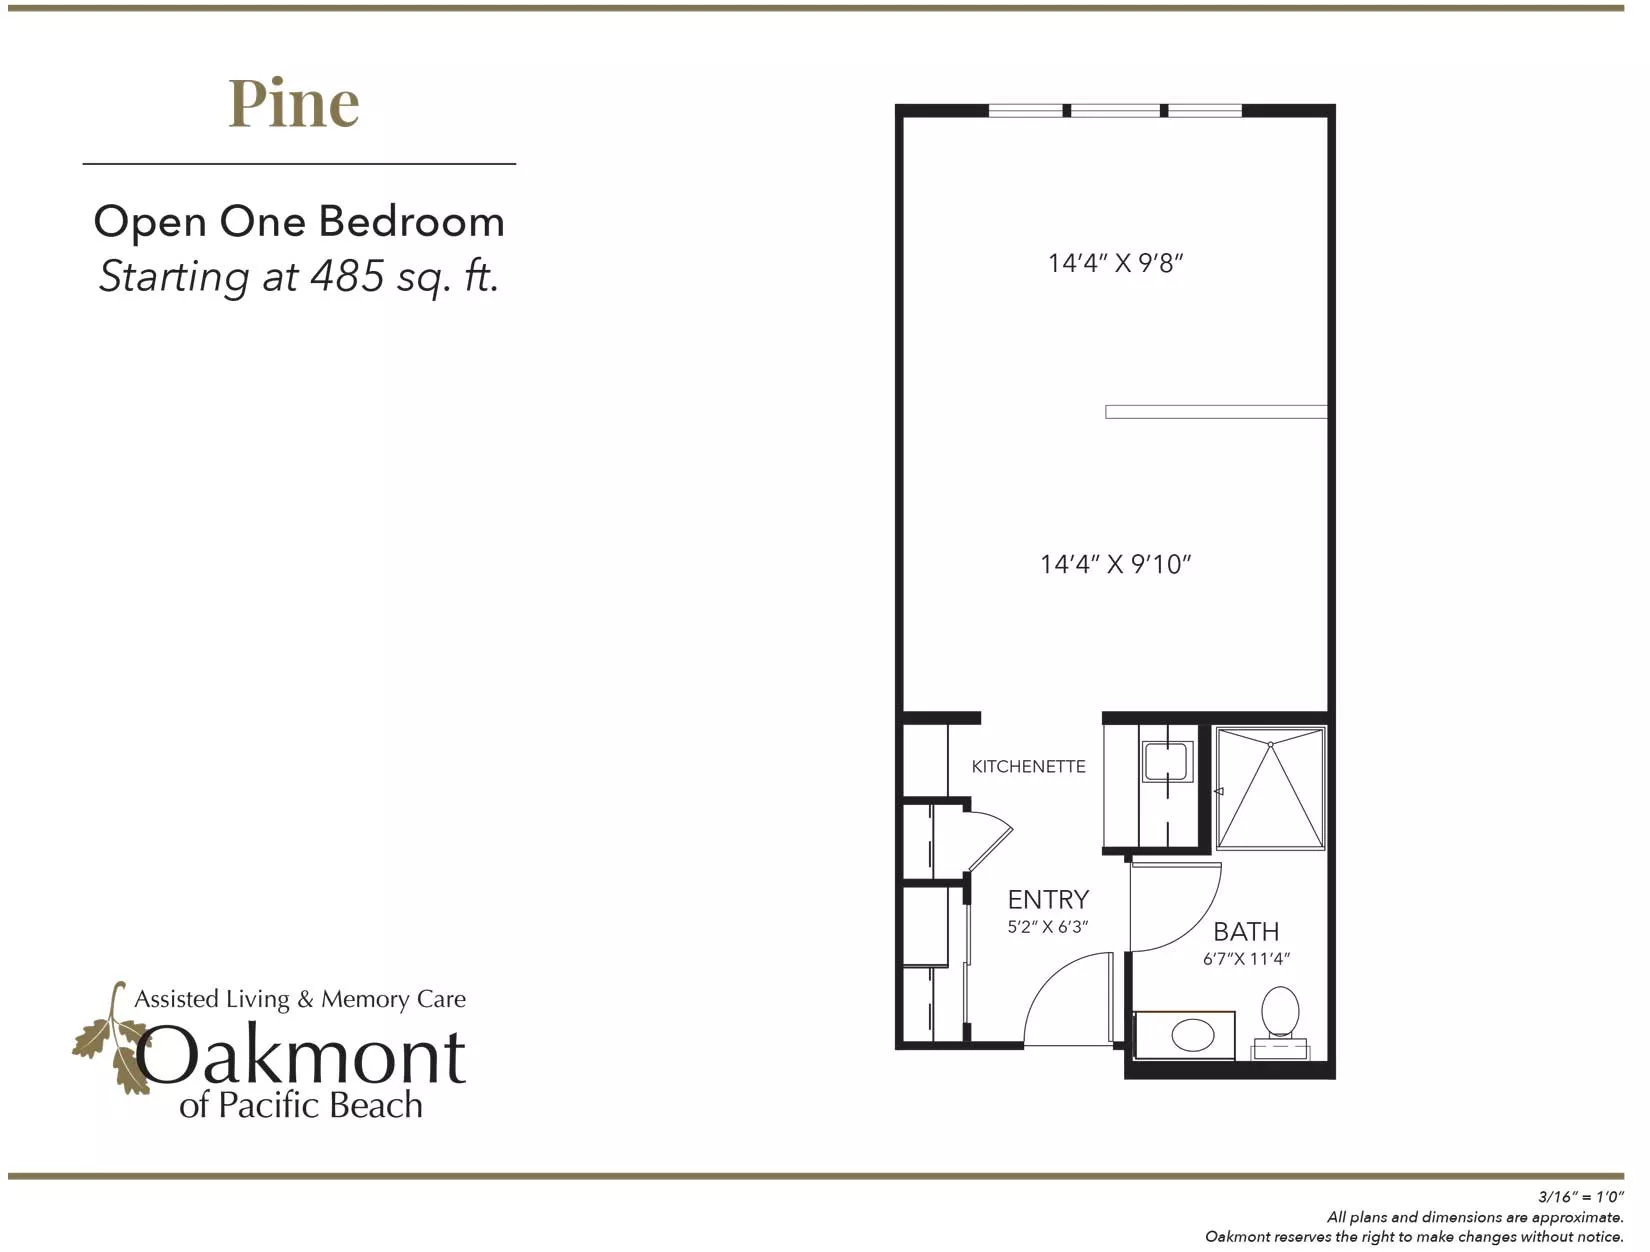 Pine One Bedroom Floor Plan